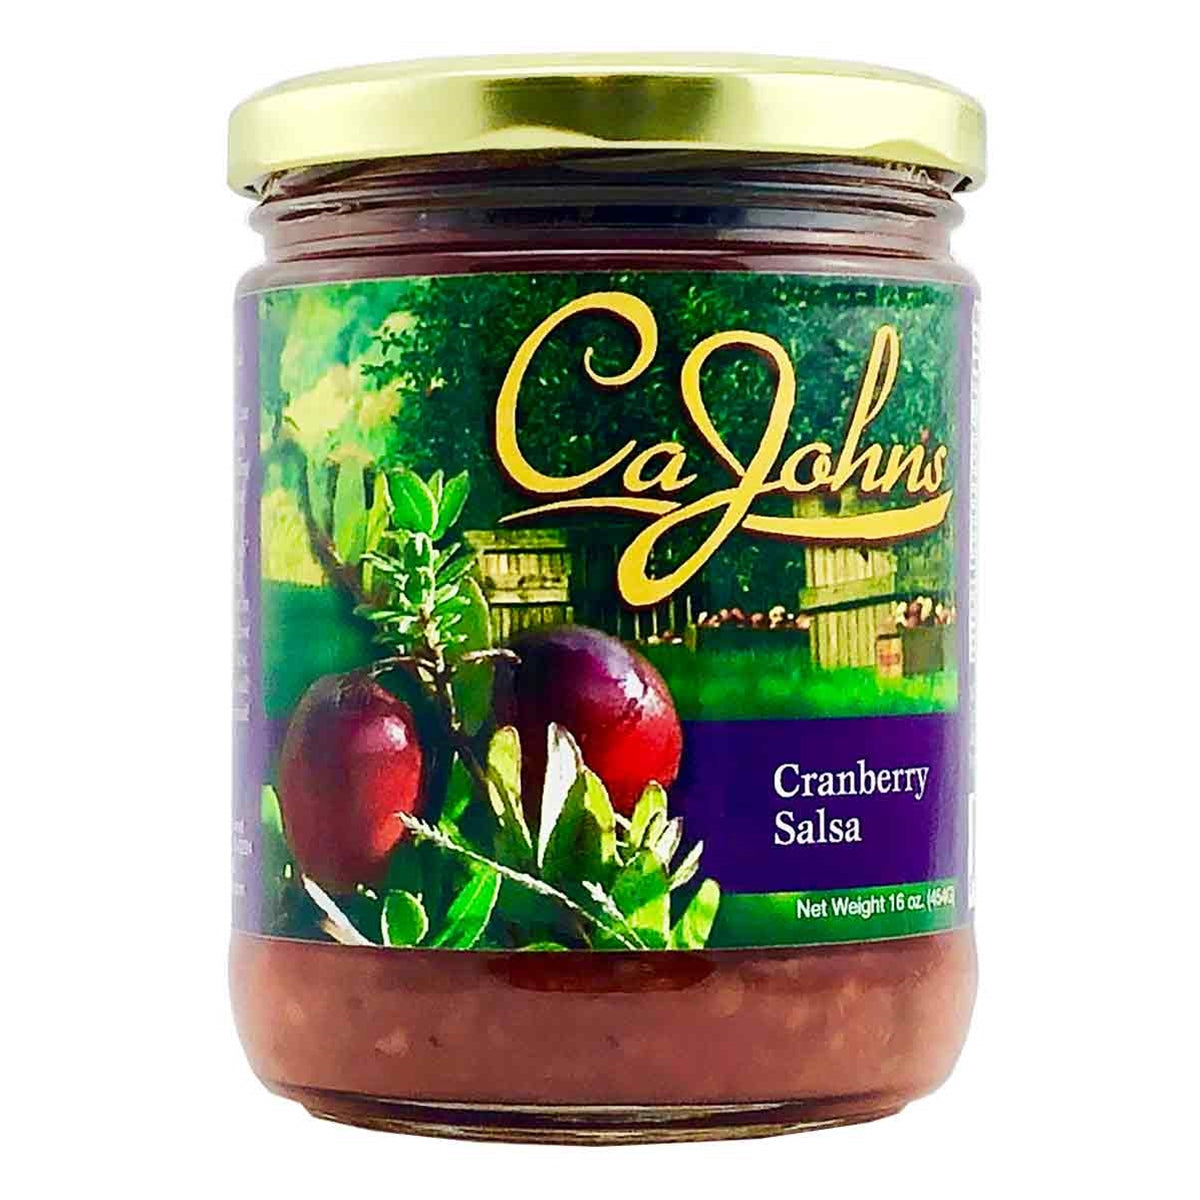 Cajohn's Gourmet Cranberry Salsa